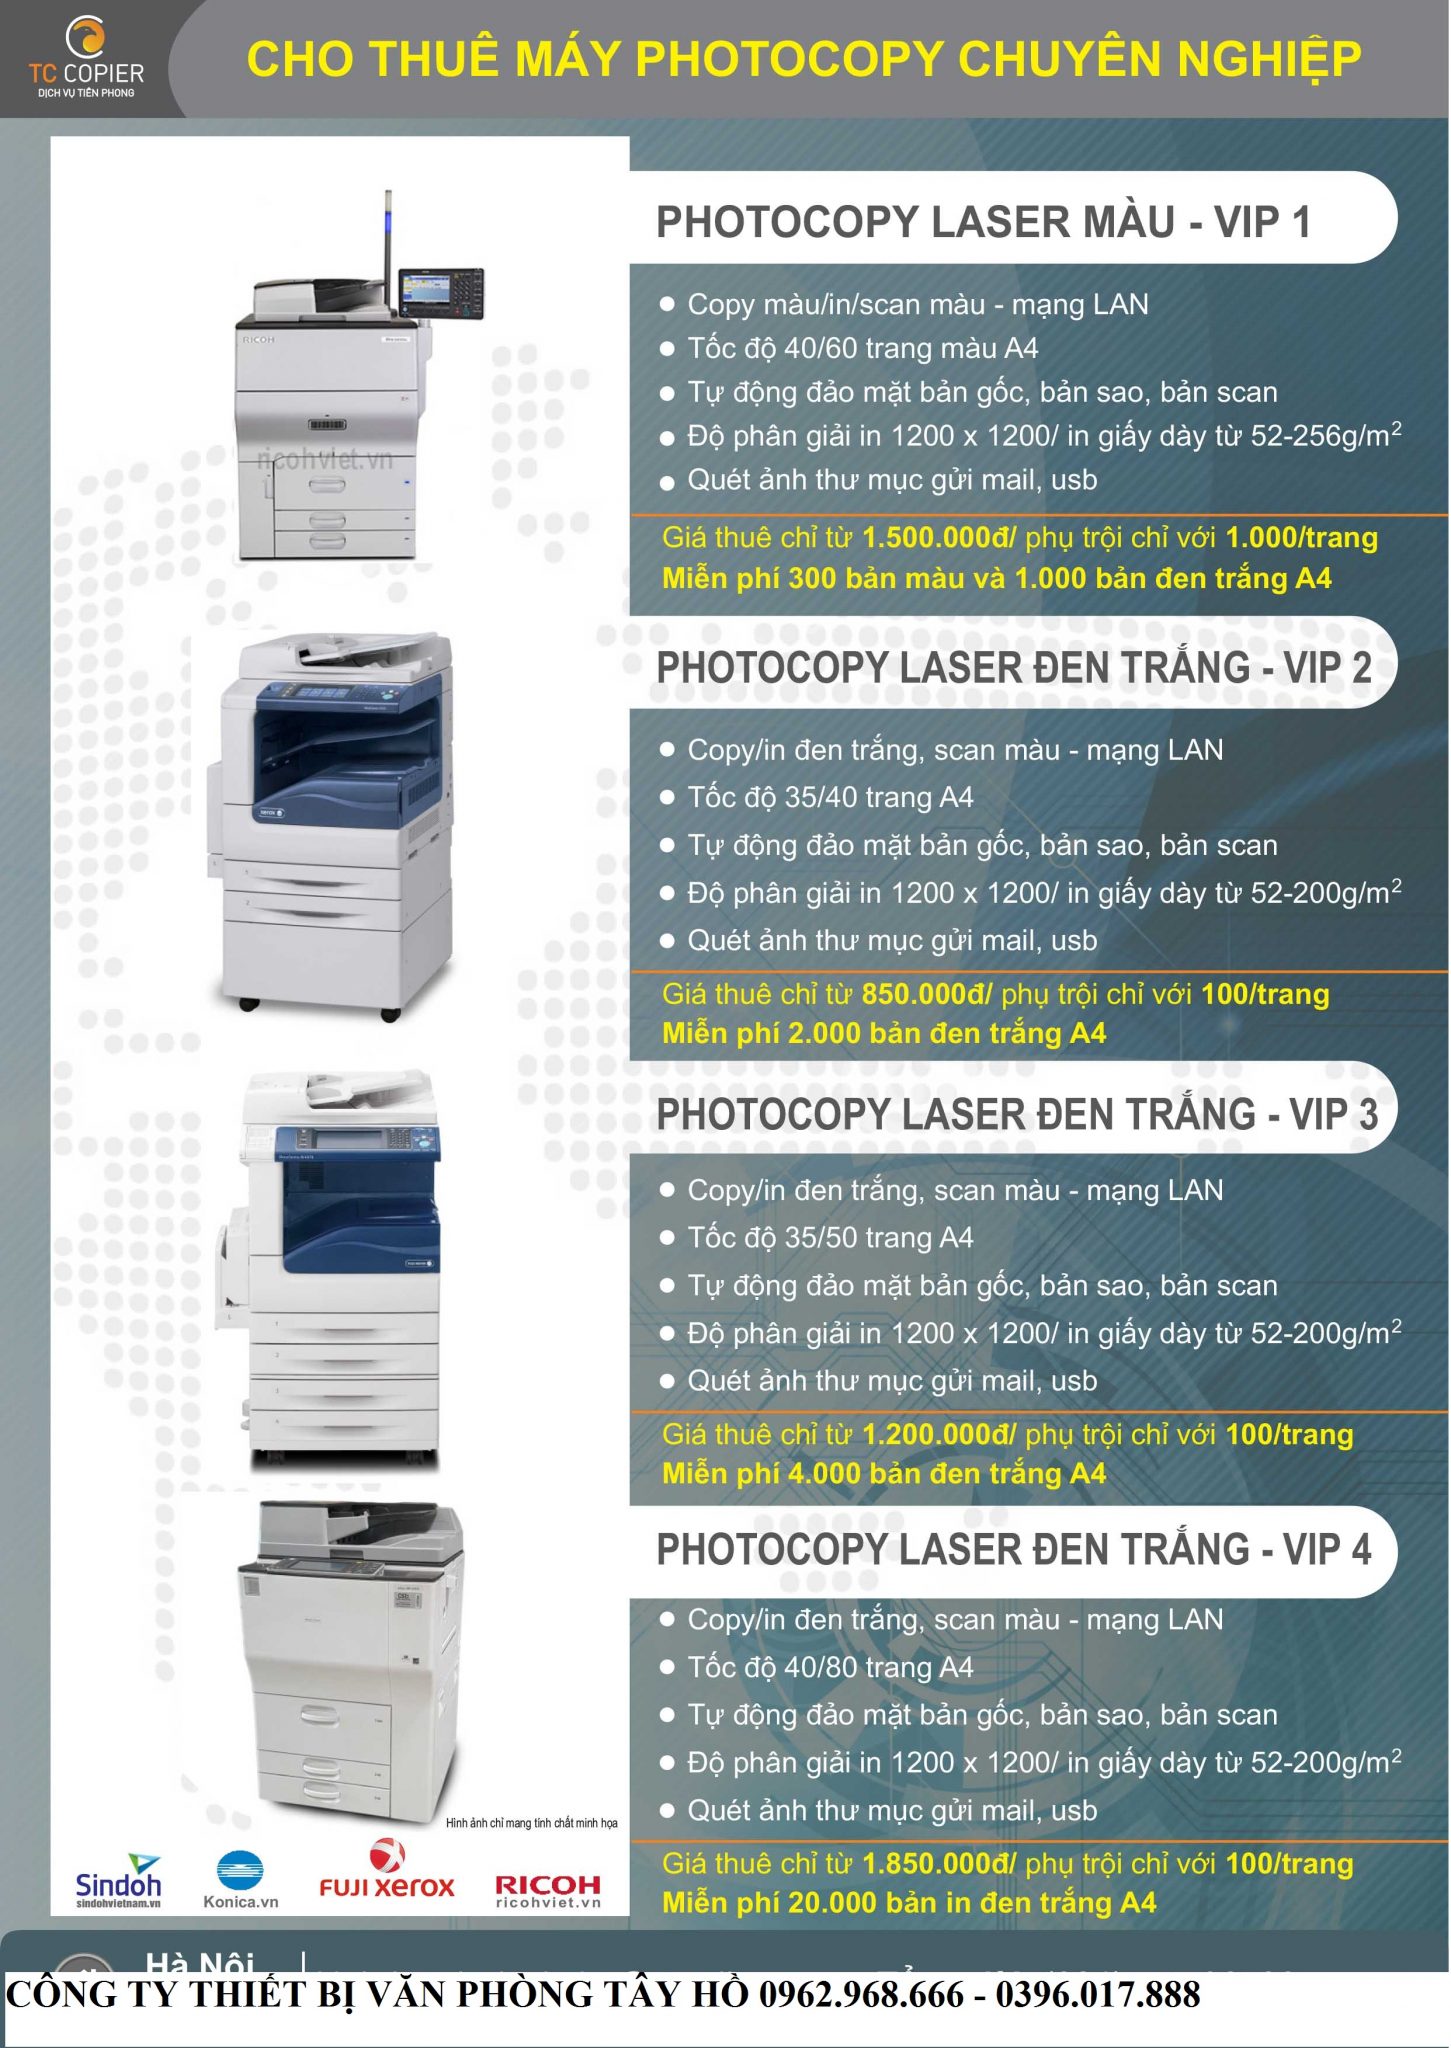 Cho thuê máy photocopy tại Khu công nghiệp Quang Minh